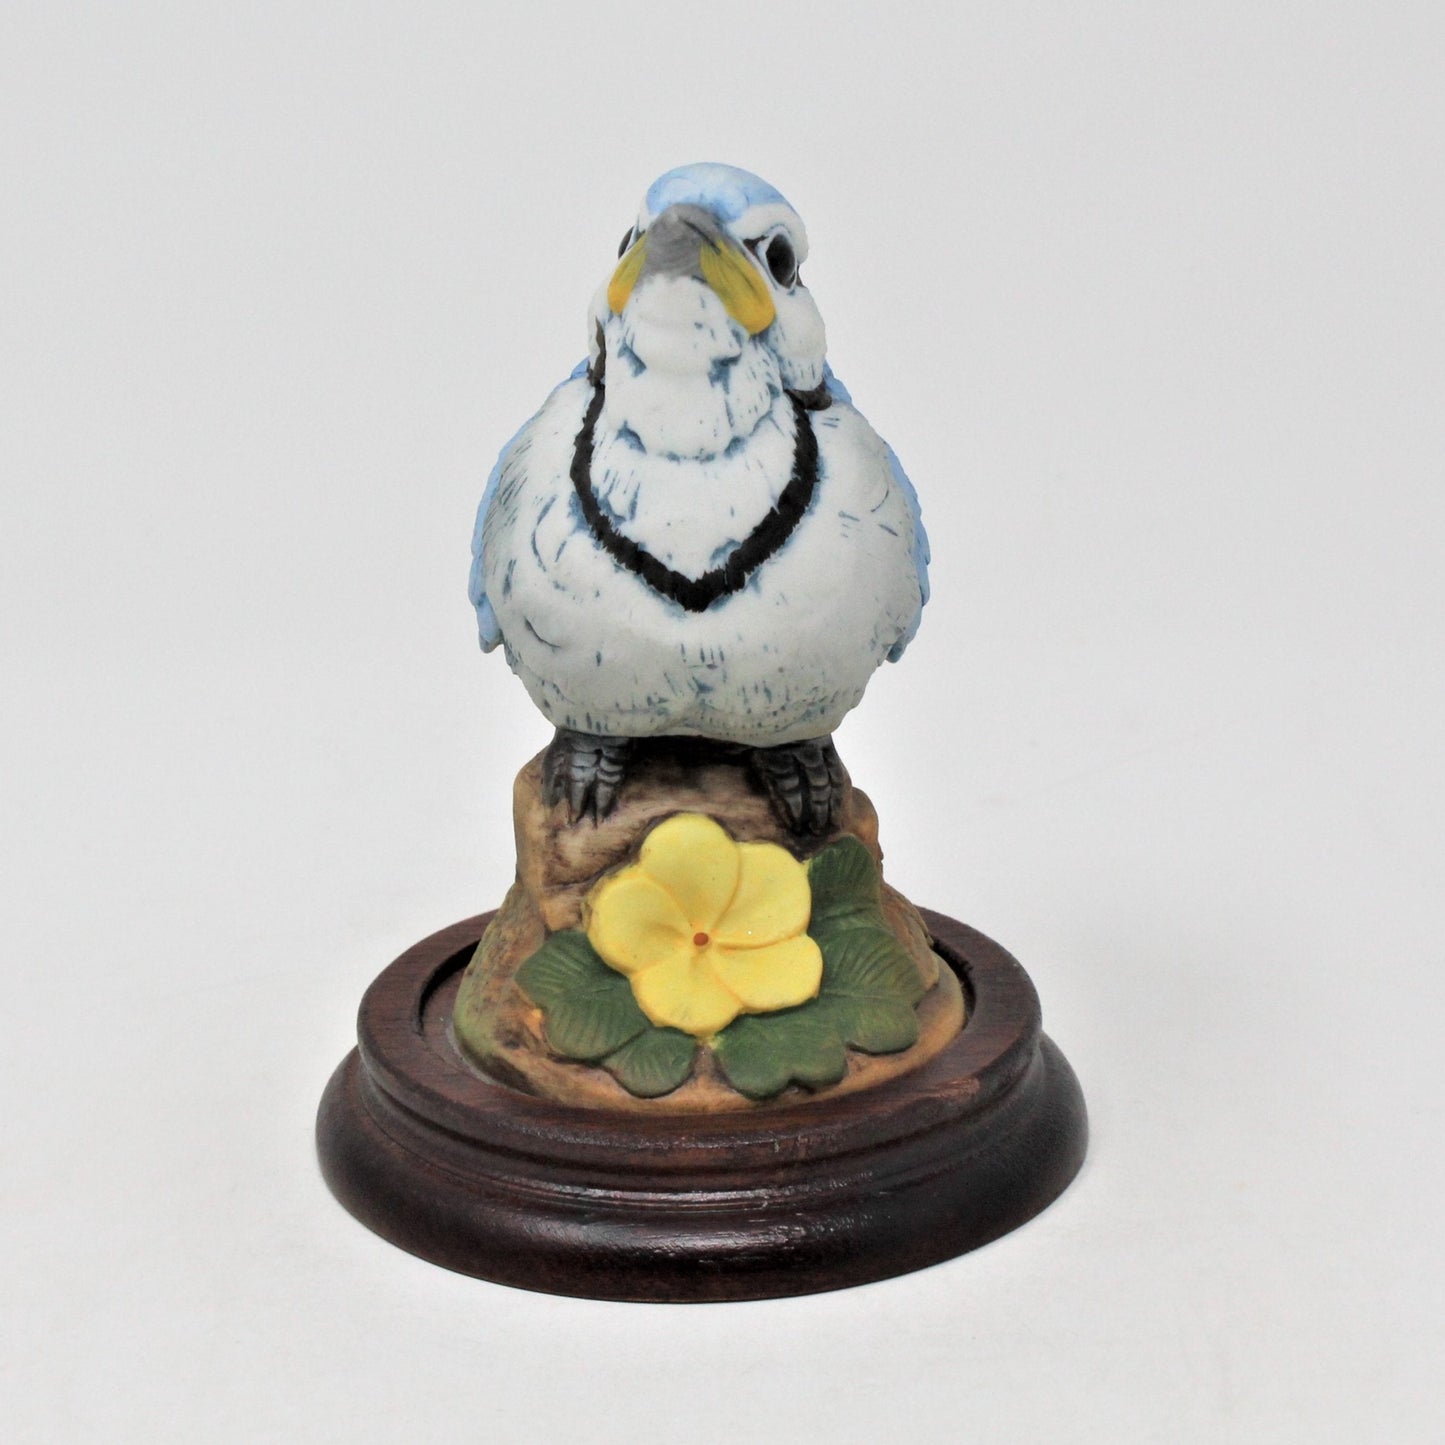 Figurine, Sadek, Baby Bird Bluejay, Porcelain on Wood Base, Vintage, SOLD